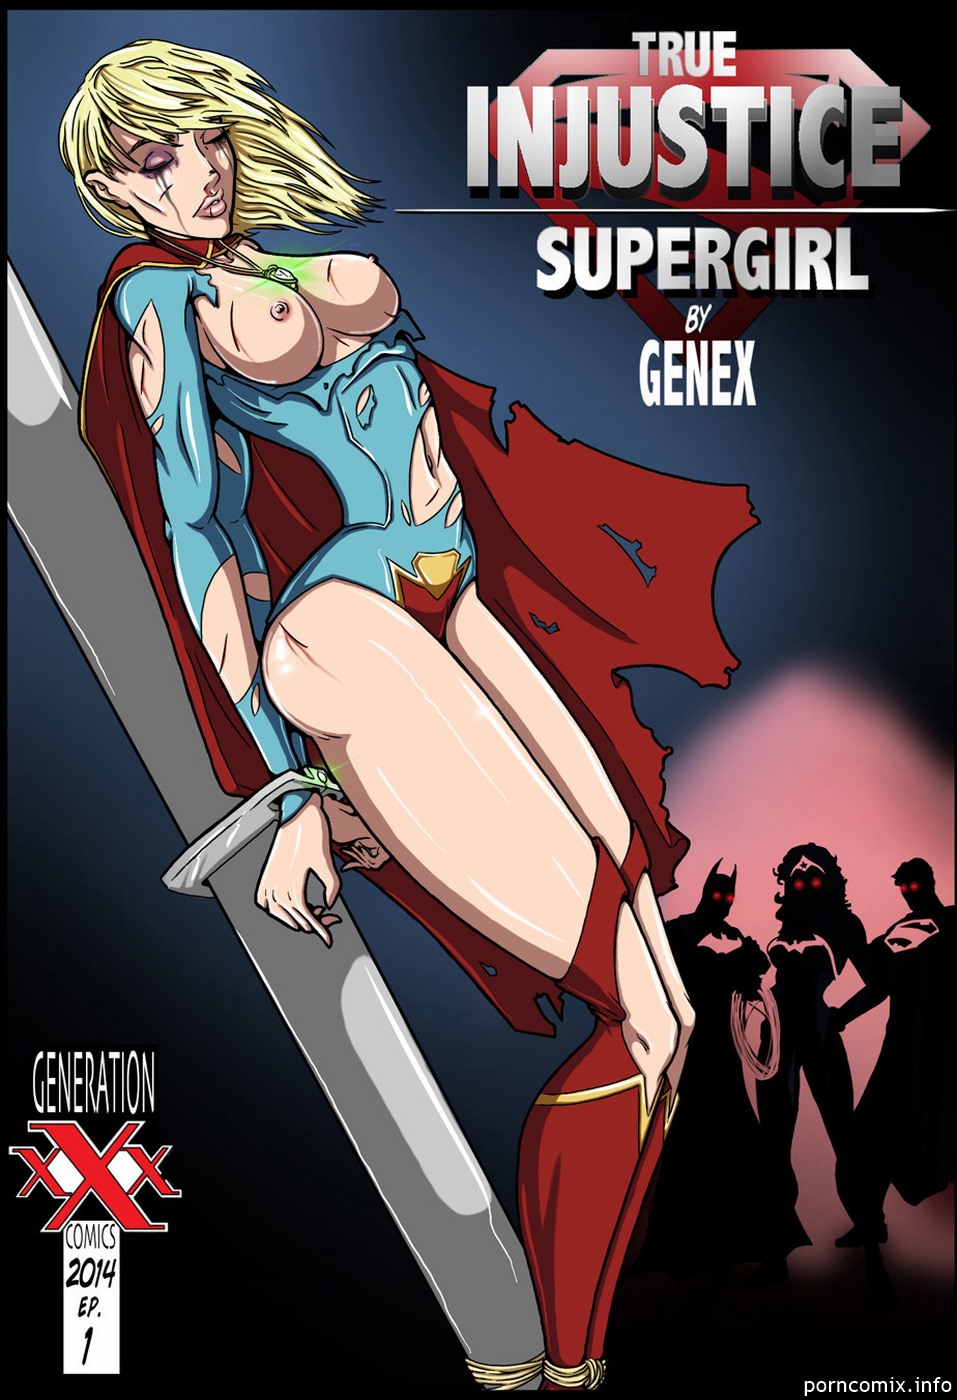 genex waar onrecht supergirl